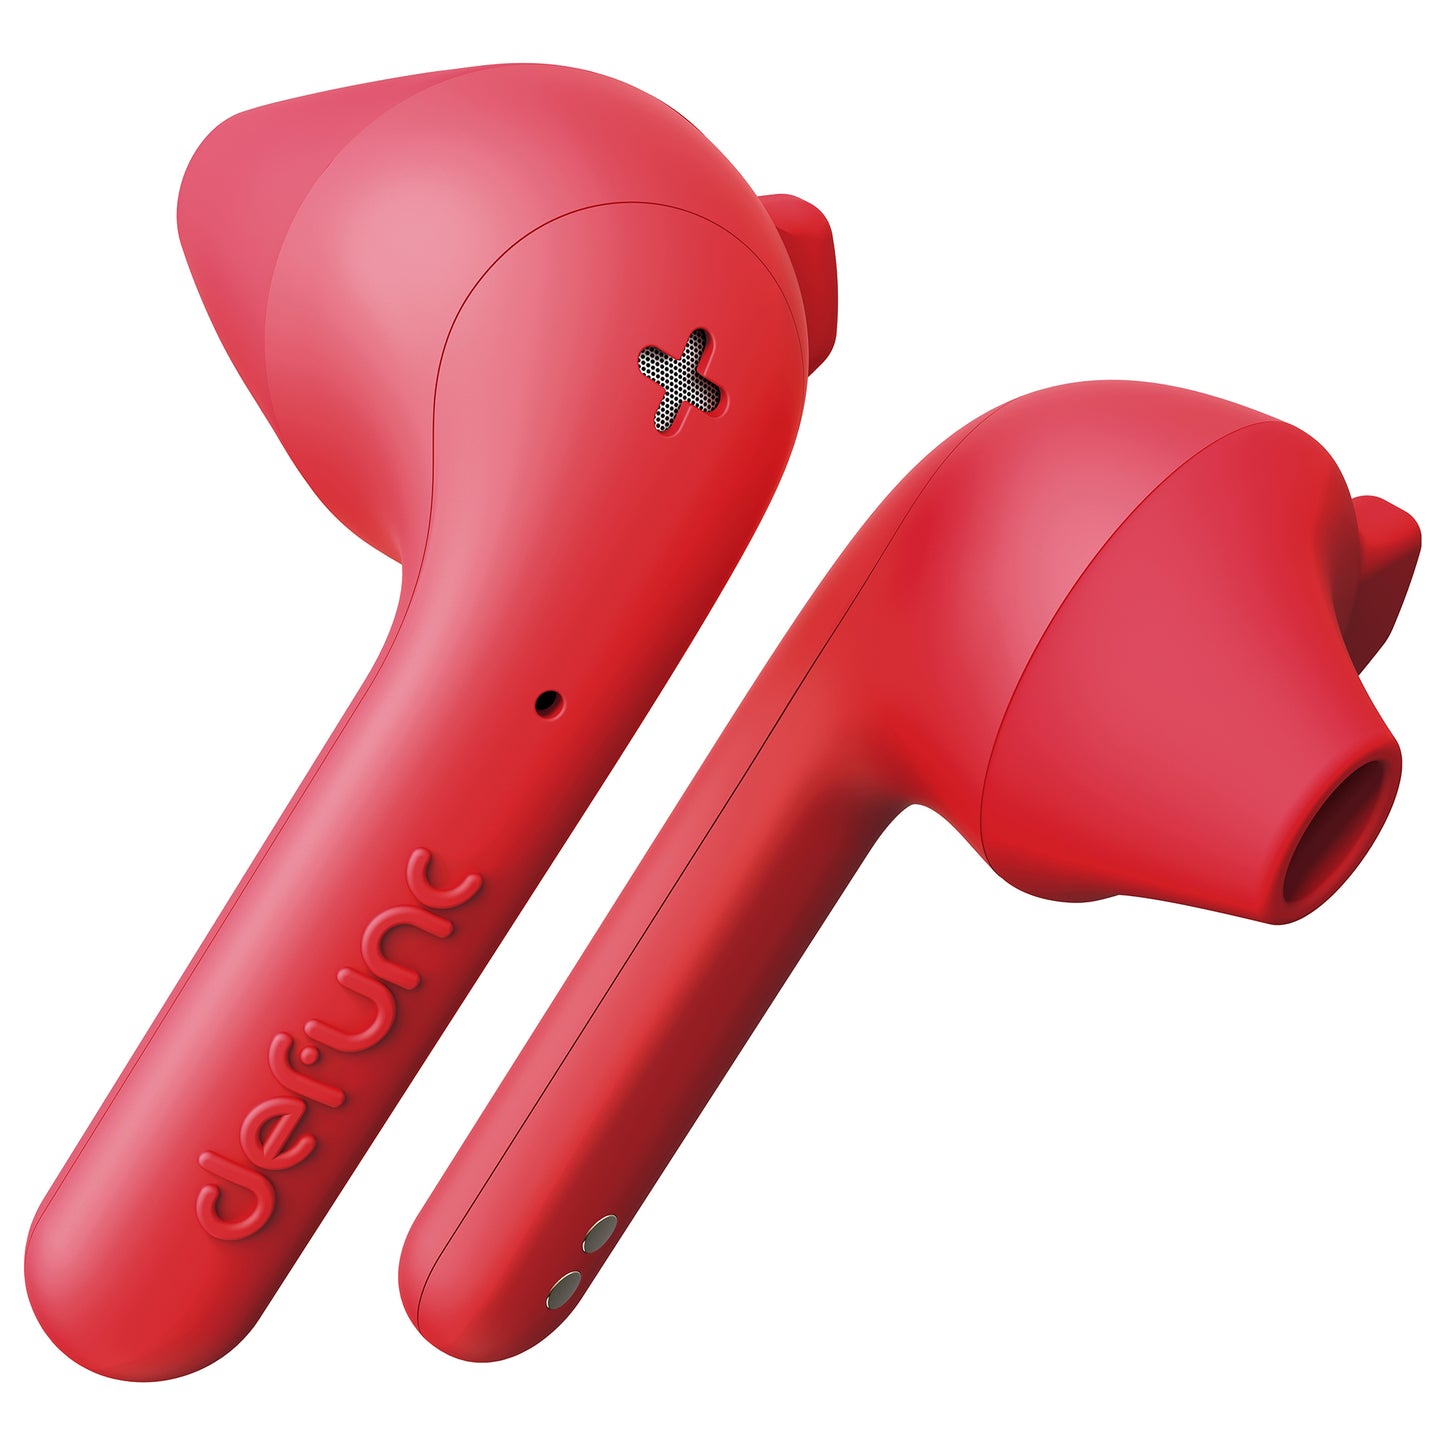 DEFUNC True Basic True Wireless Earphones - Red